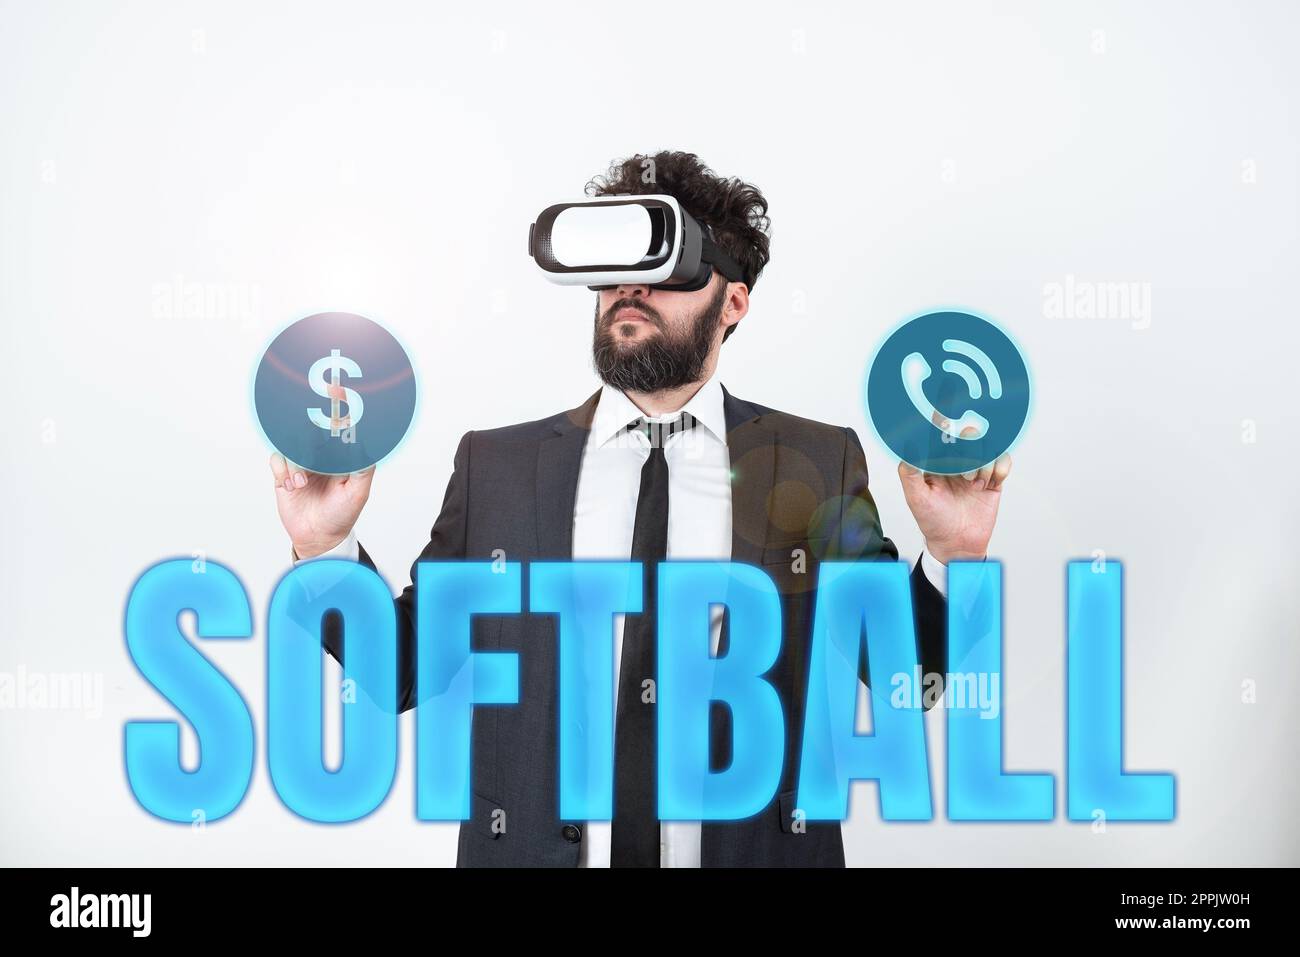 Textbeschriftung für Softball. Konzeptfoto ein Sport ähnlich dem Baseball, der mit einem Ball und einem Schläger gespielt wird Stockfoto